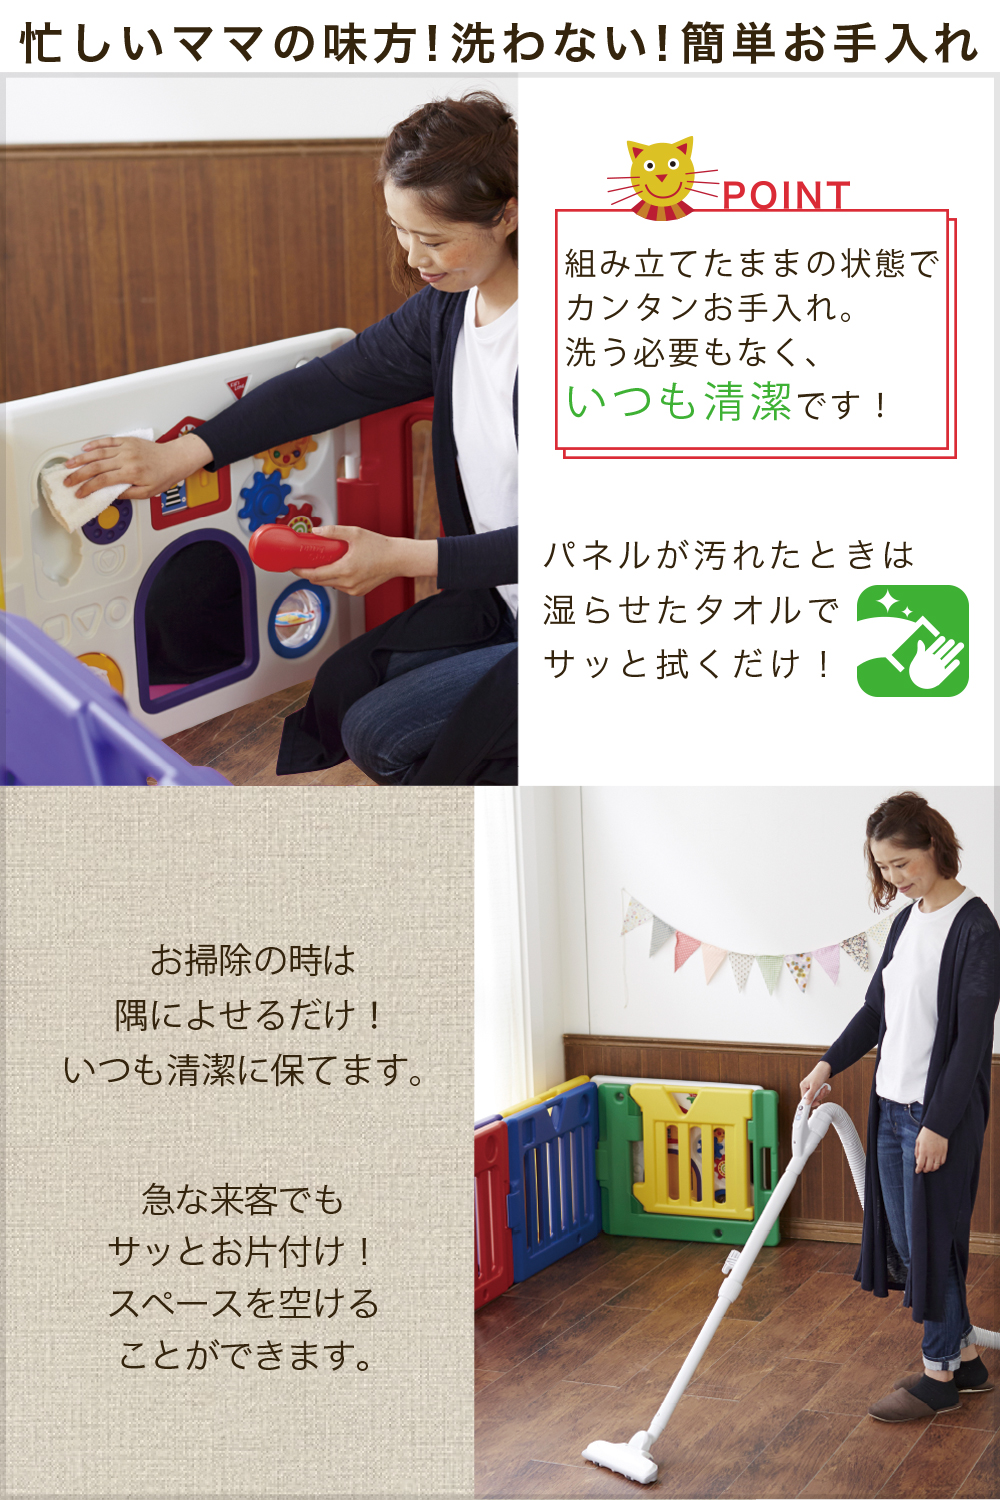 【SALE／86%OFF】 日本育児 ベビーサークル ミュージカルキッズランド DX 6ヶ月~3歳半対象 おもちゃパネル付のベビーサークル